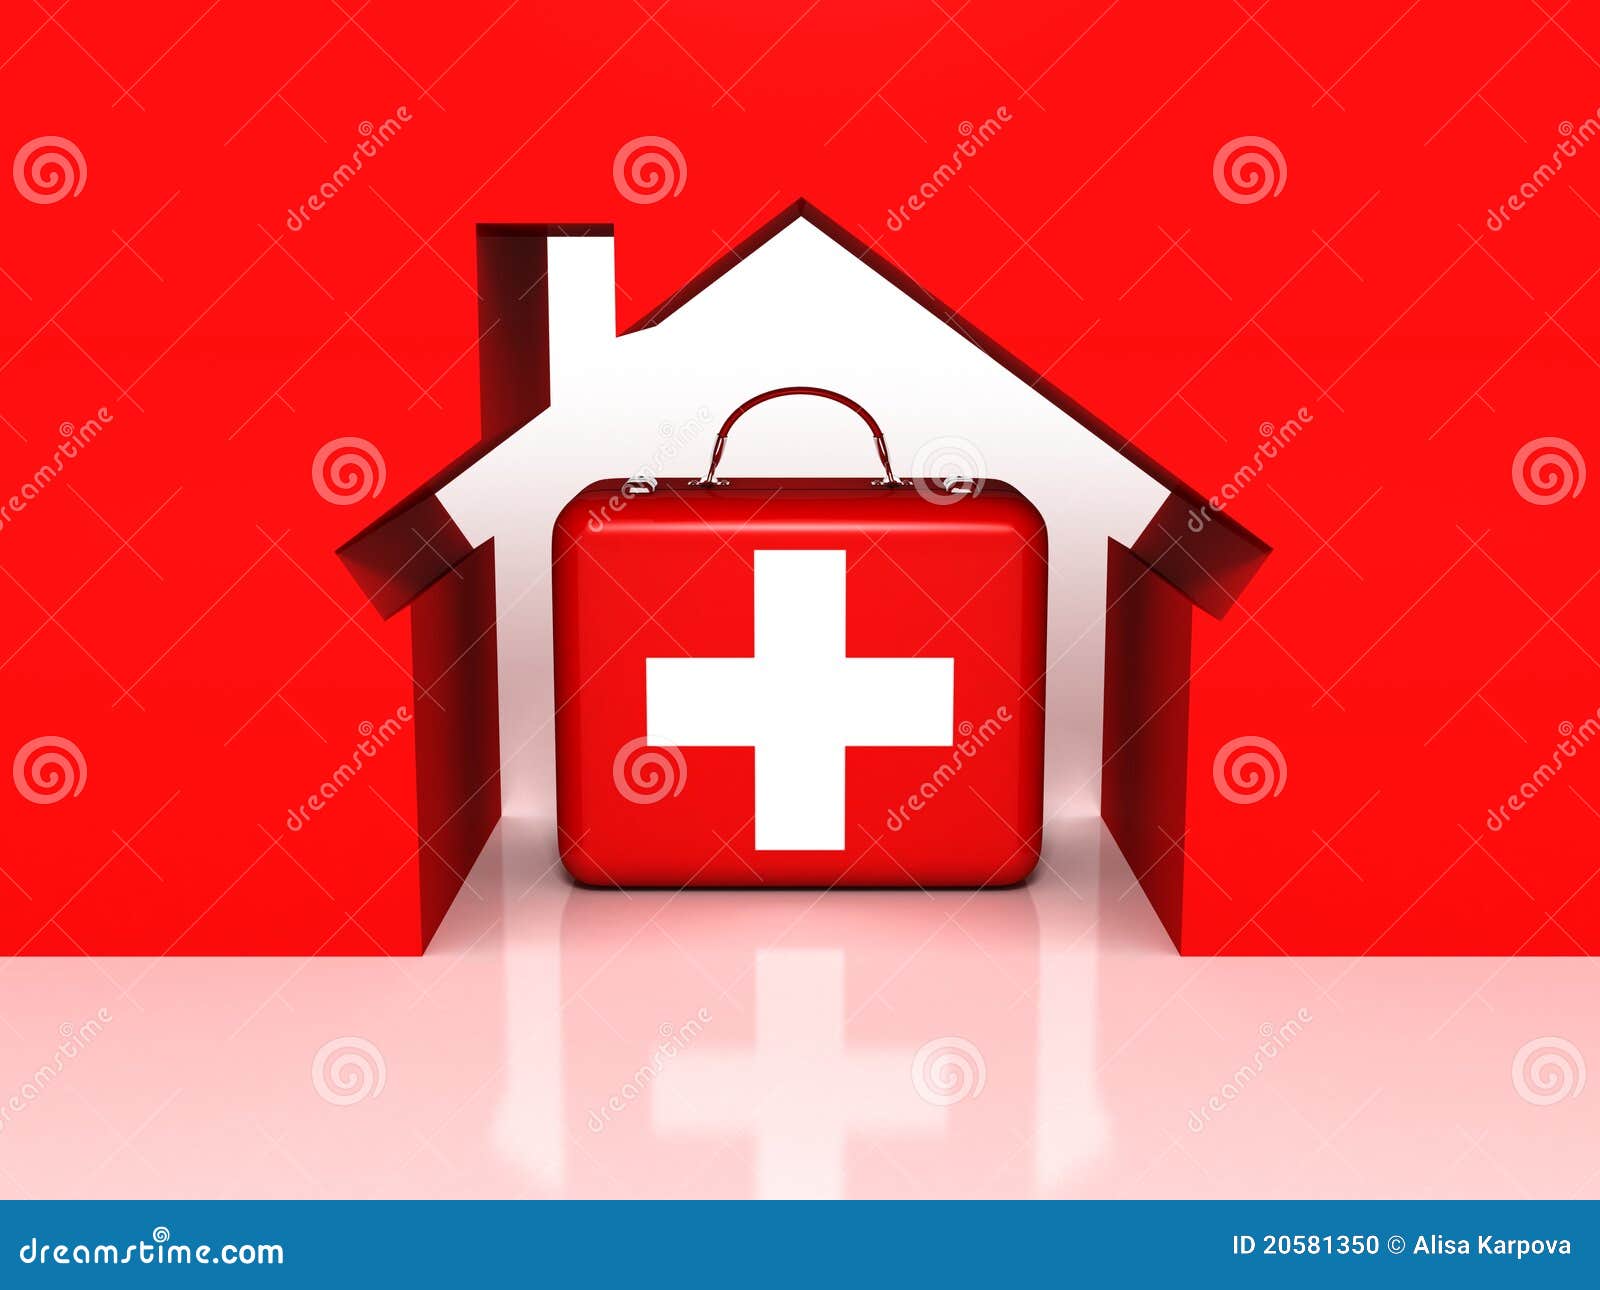 Túi y tế đỏ là một biểu tượng của sự cứu trợ và sự sống còn. Xem ảnh để cùng tìm hiểu những nhiệm vụ quan trọng mà các túi y tế đỏ đảm nhận và cách chúng giúp cho những người cần đến sự cứu trợ.